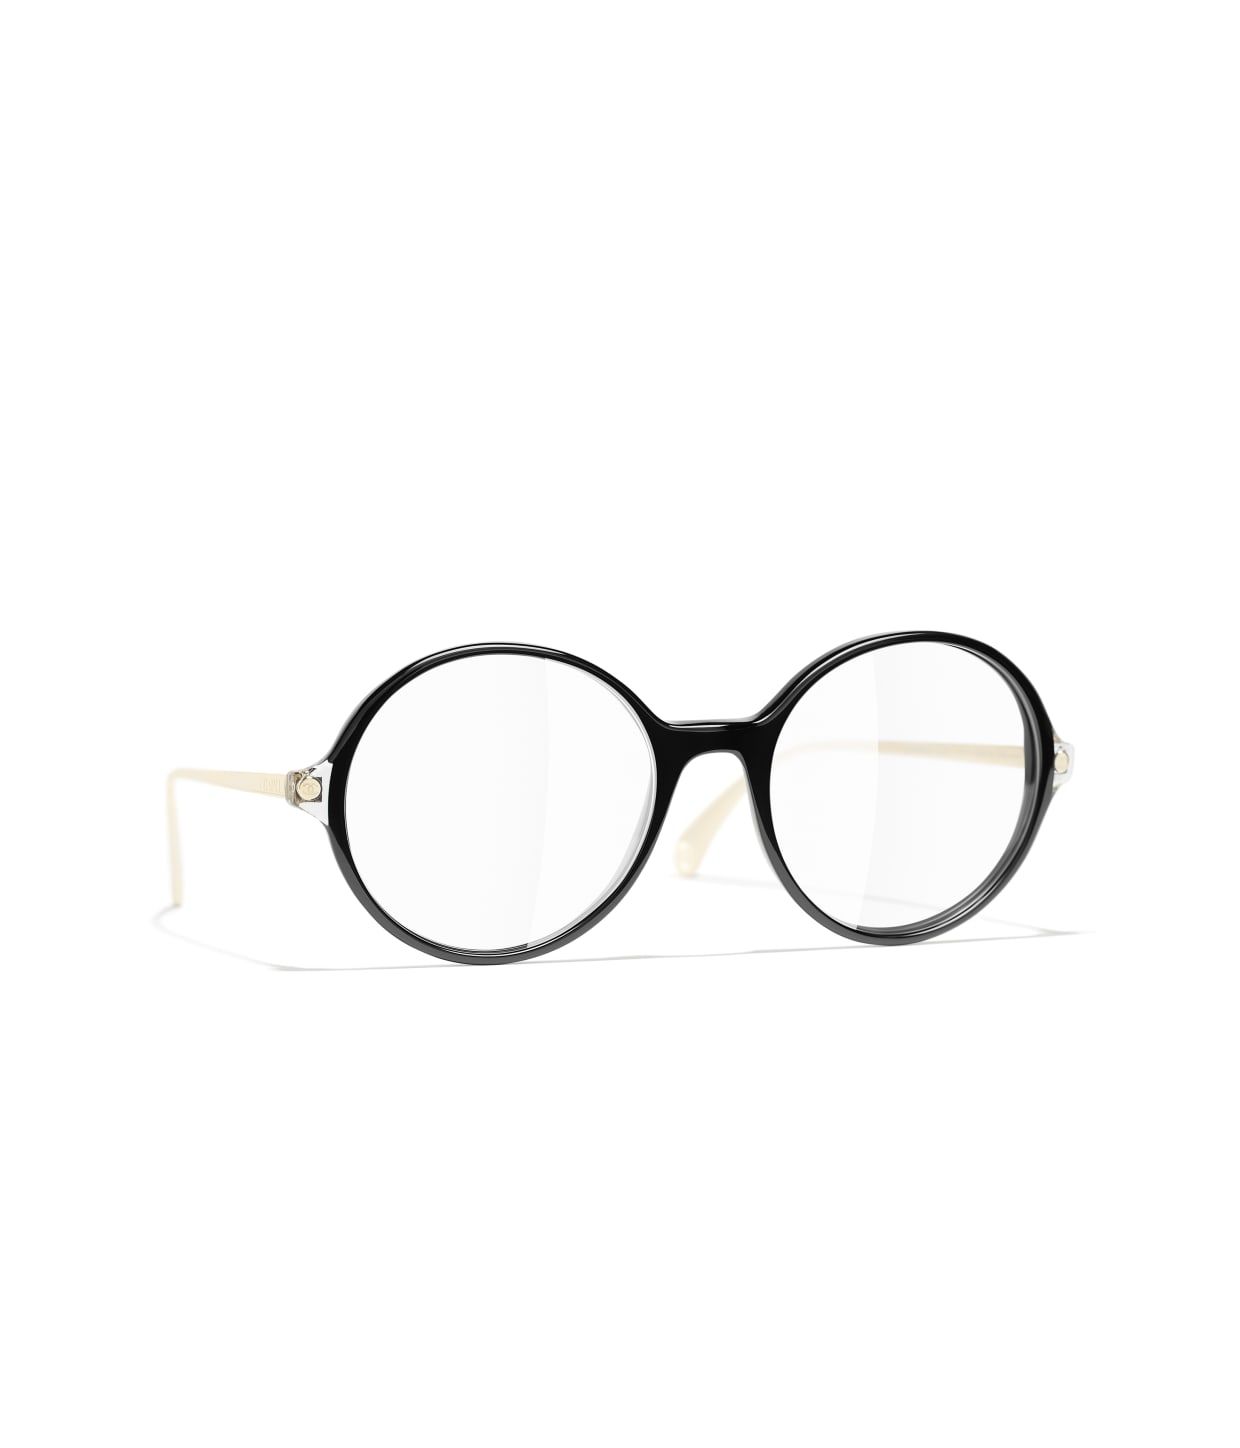 Reading Glasses Chanel3304  Glasses Eyeglasses frames Reading glasses